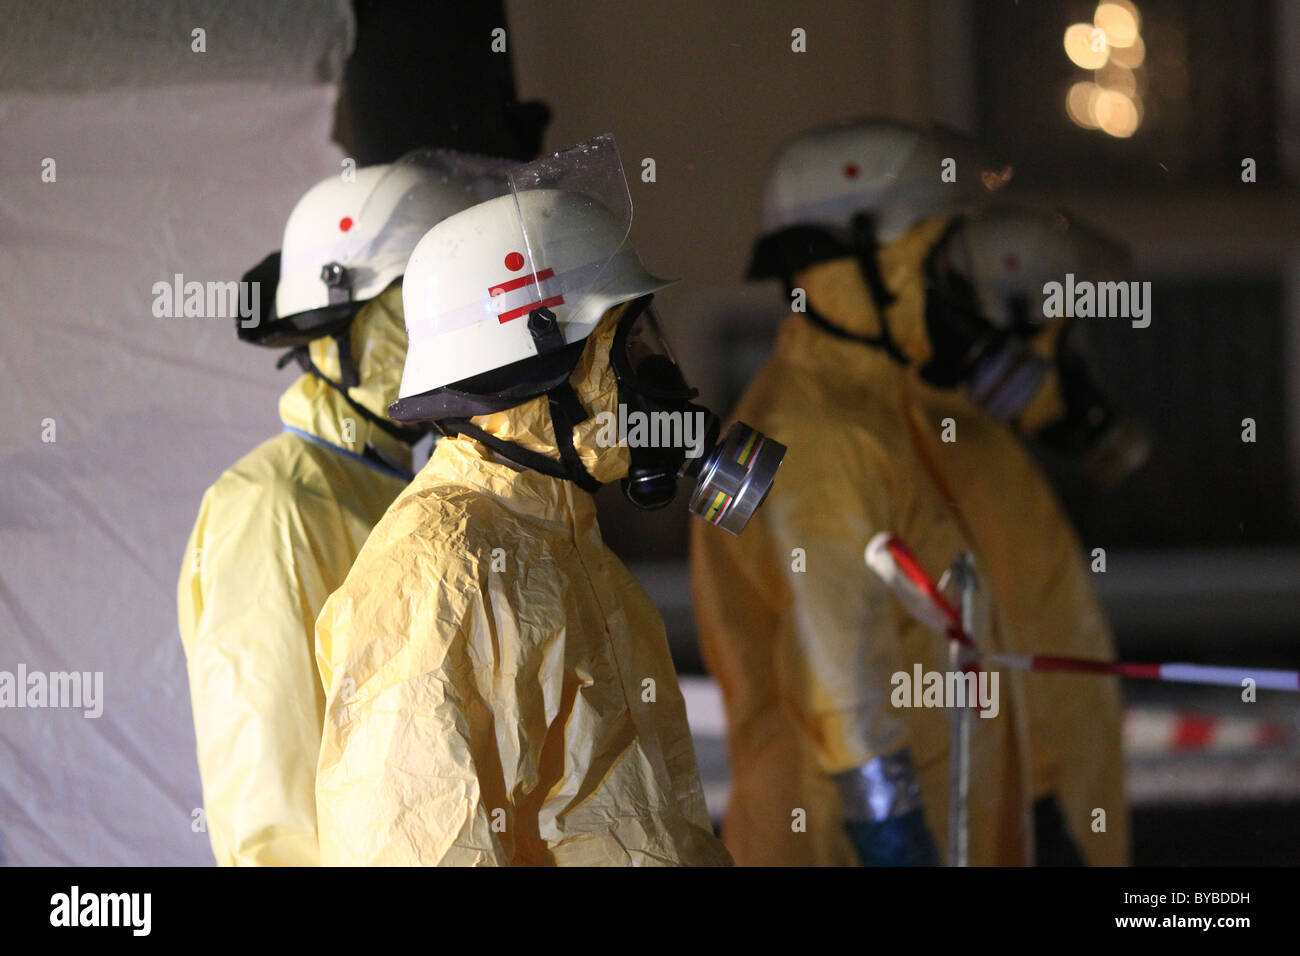 Feuerwehr für Containment ein gefährlicher Stoffe tragen Schutzkleidung, Helme und Atemschutz Masken ausgestattet Stockfoto